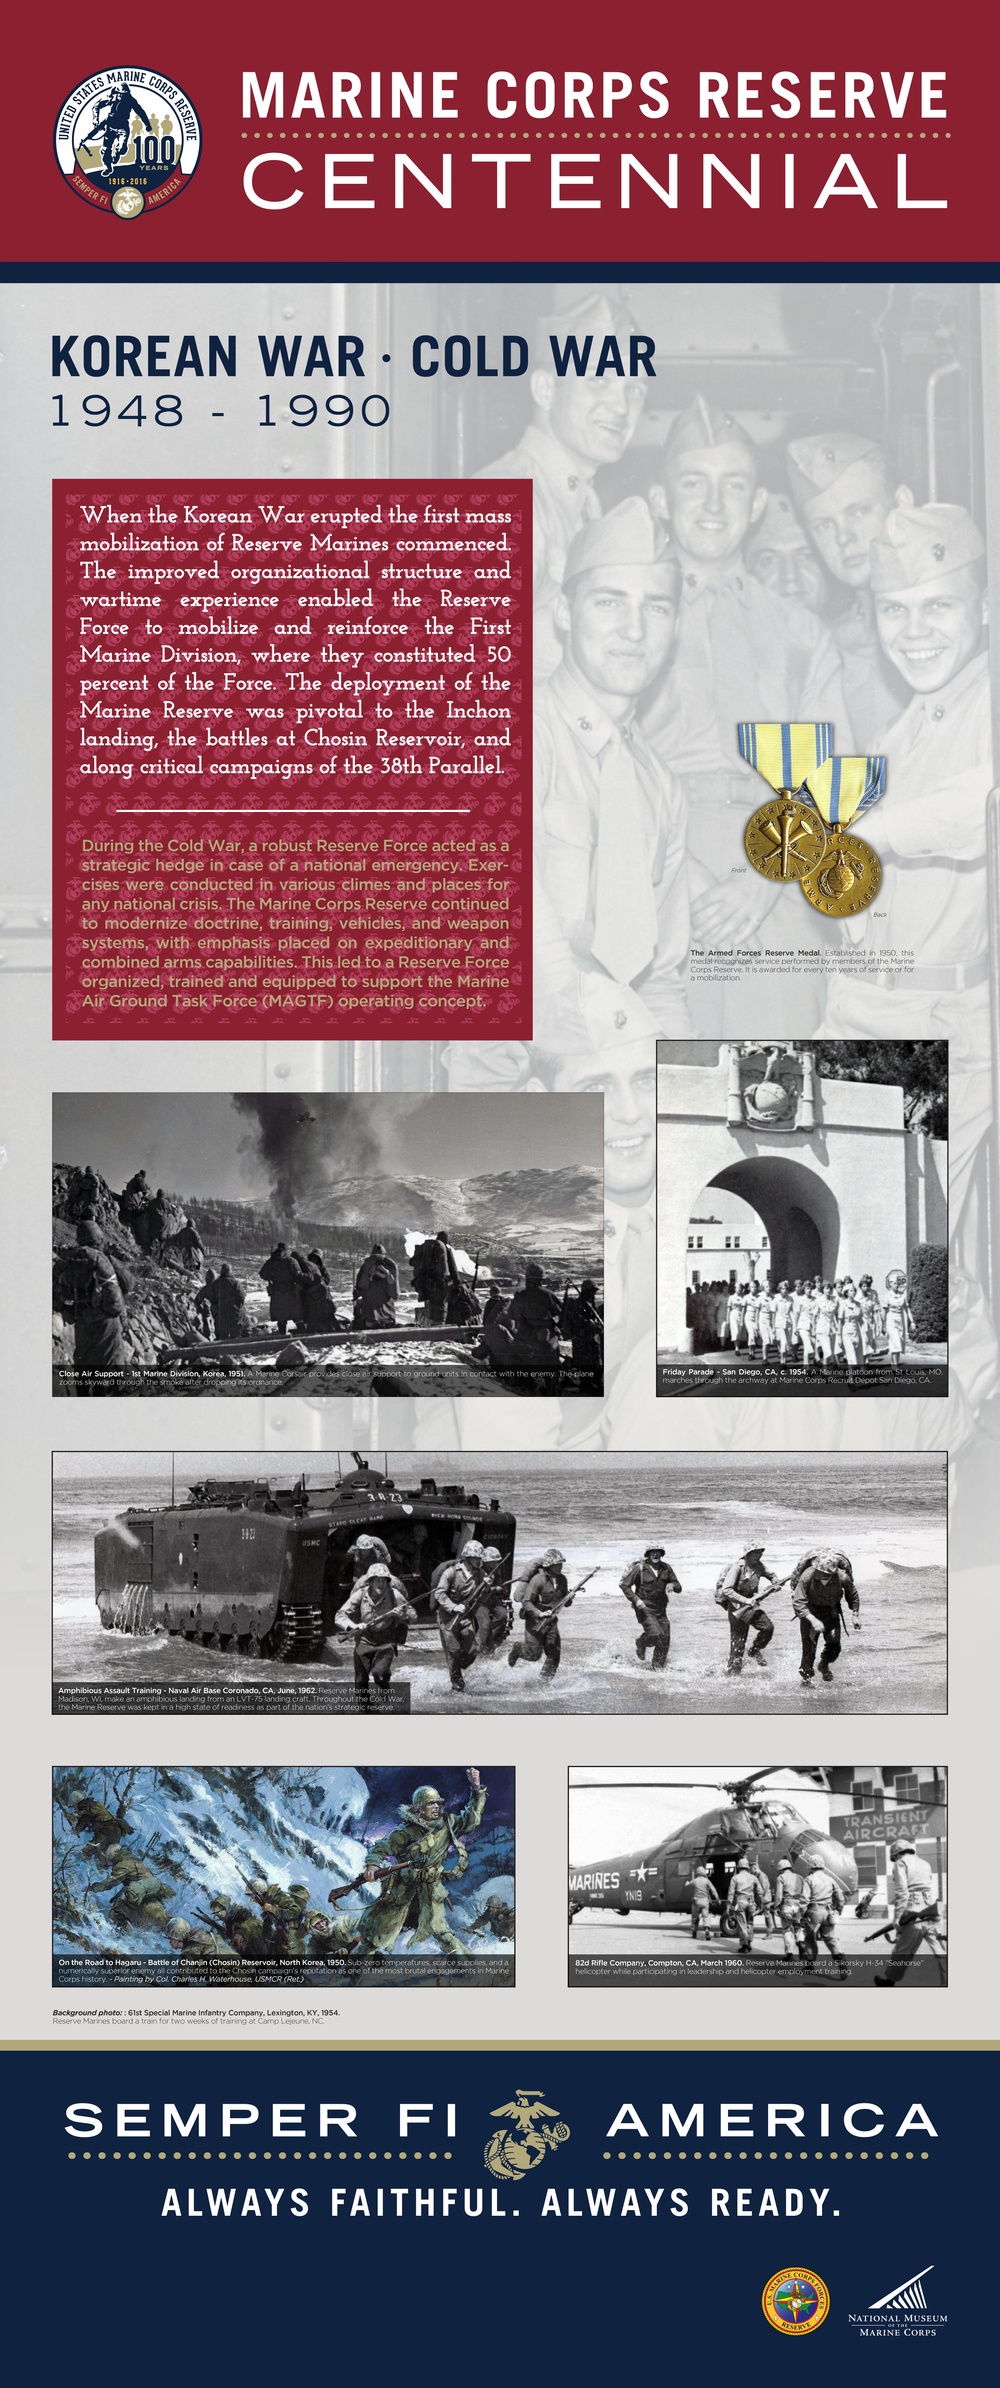 Marine Corps Reserve Centennial Museum Panel 4 - Korean War - Cold War